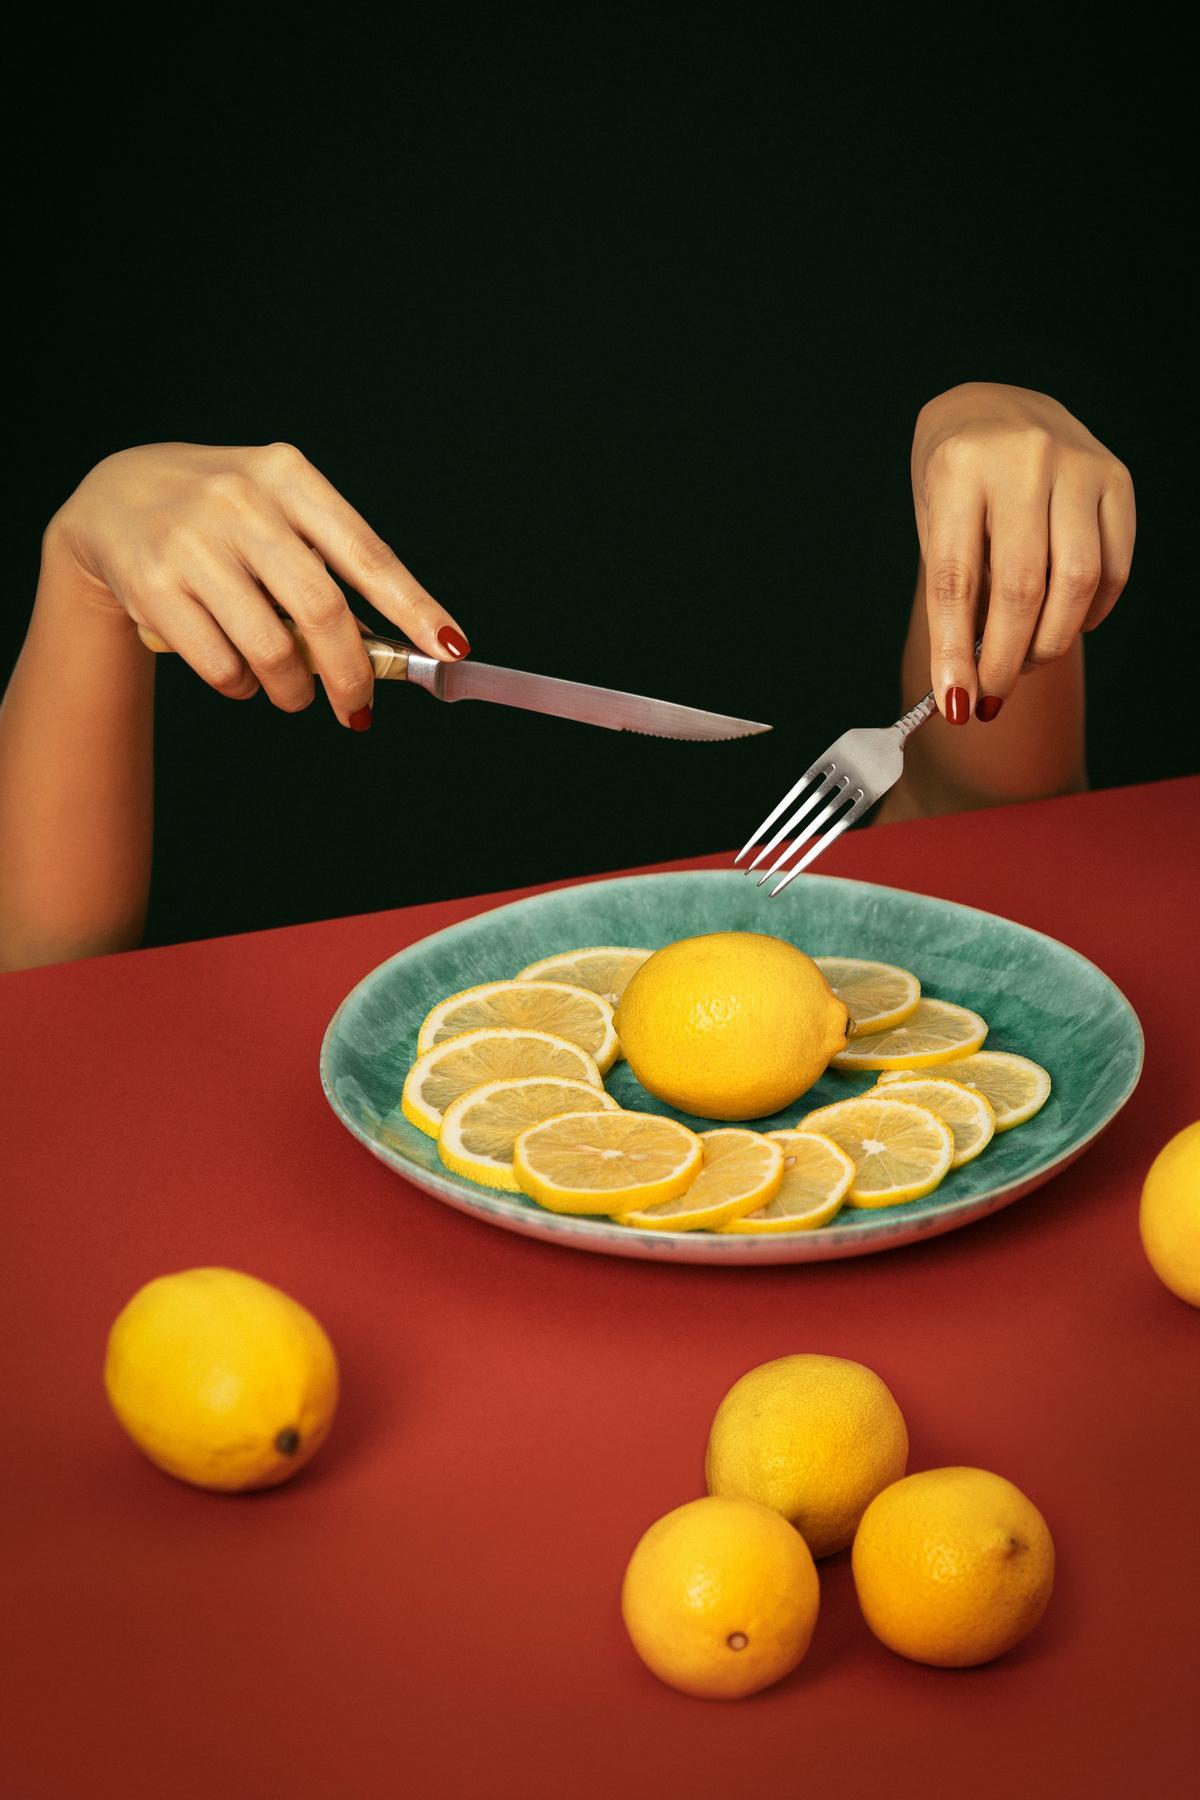 La dieta del limón  para adelgazar está muy de moda.